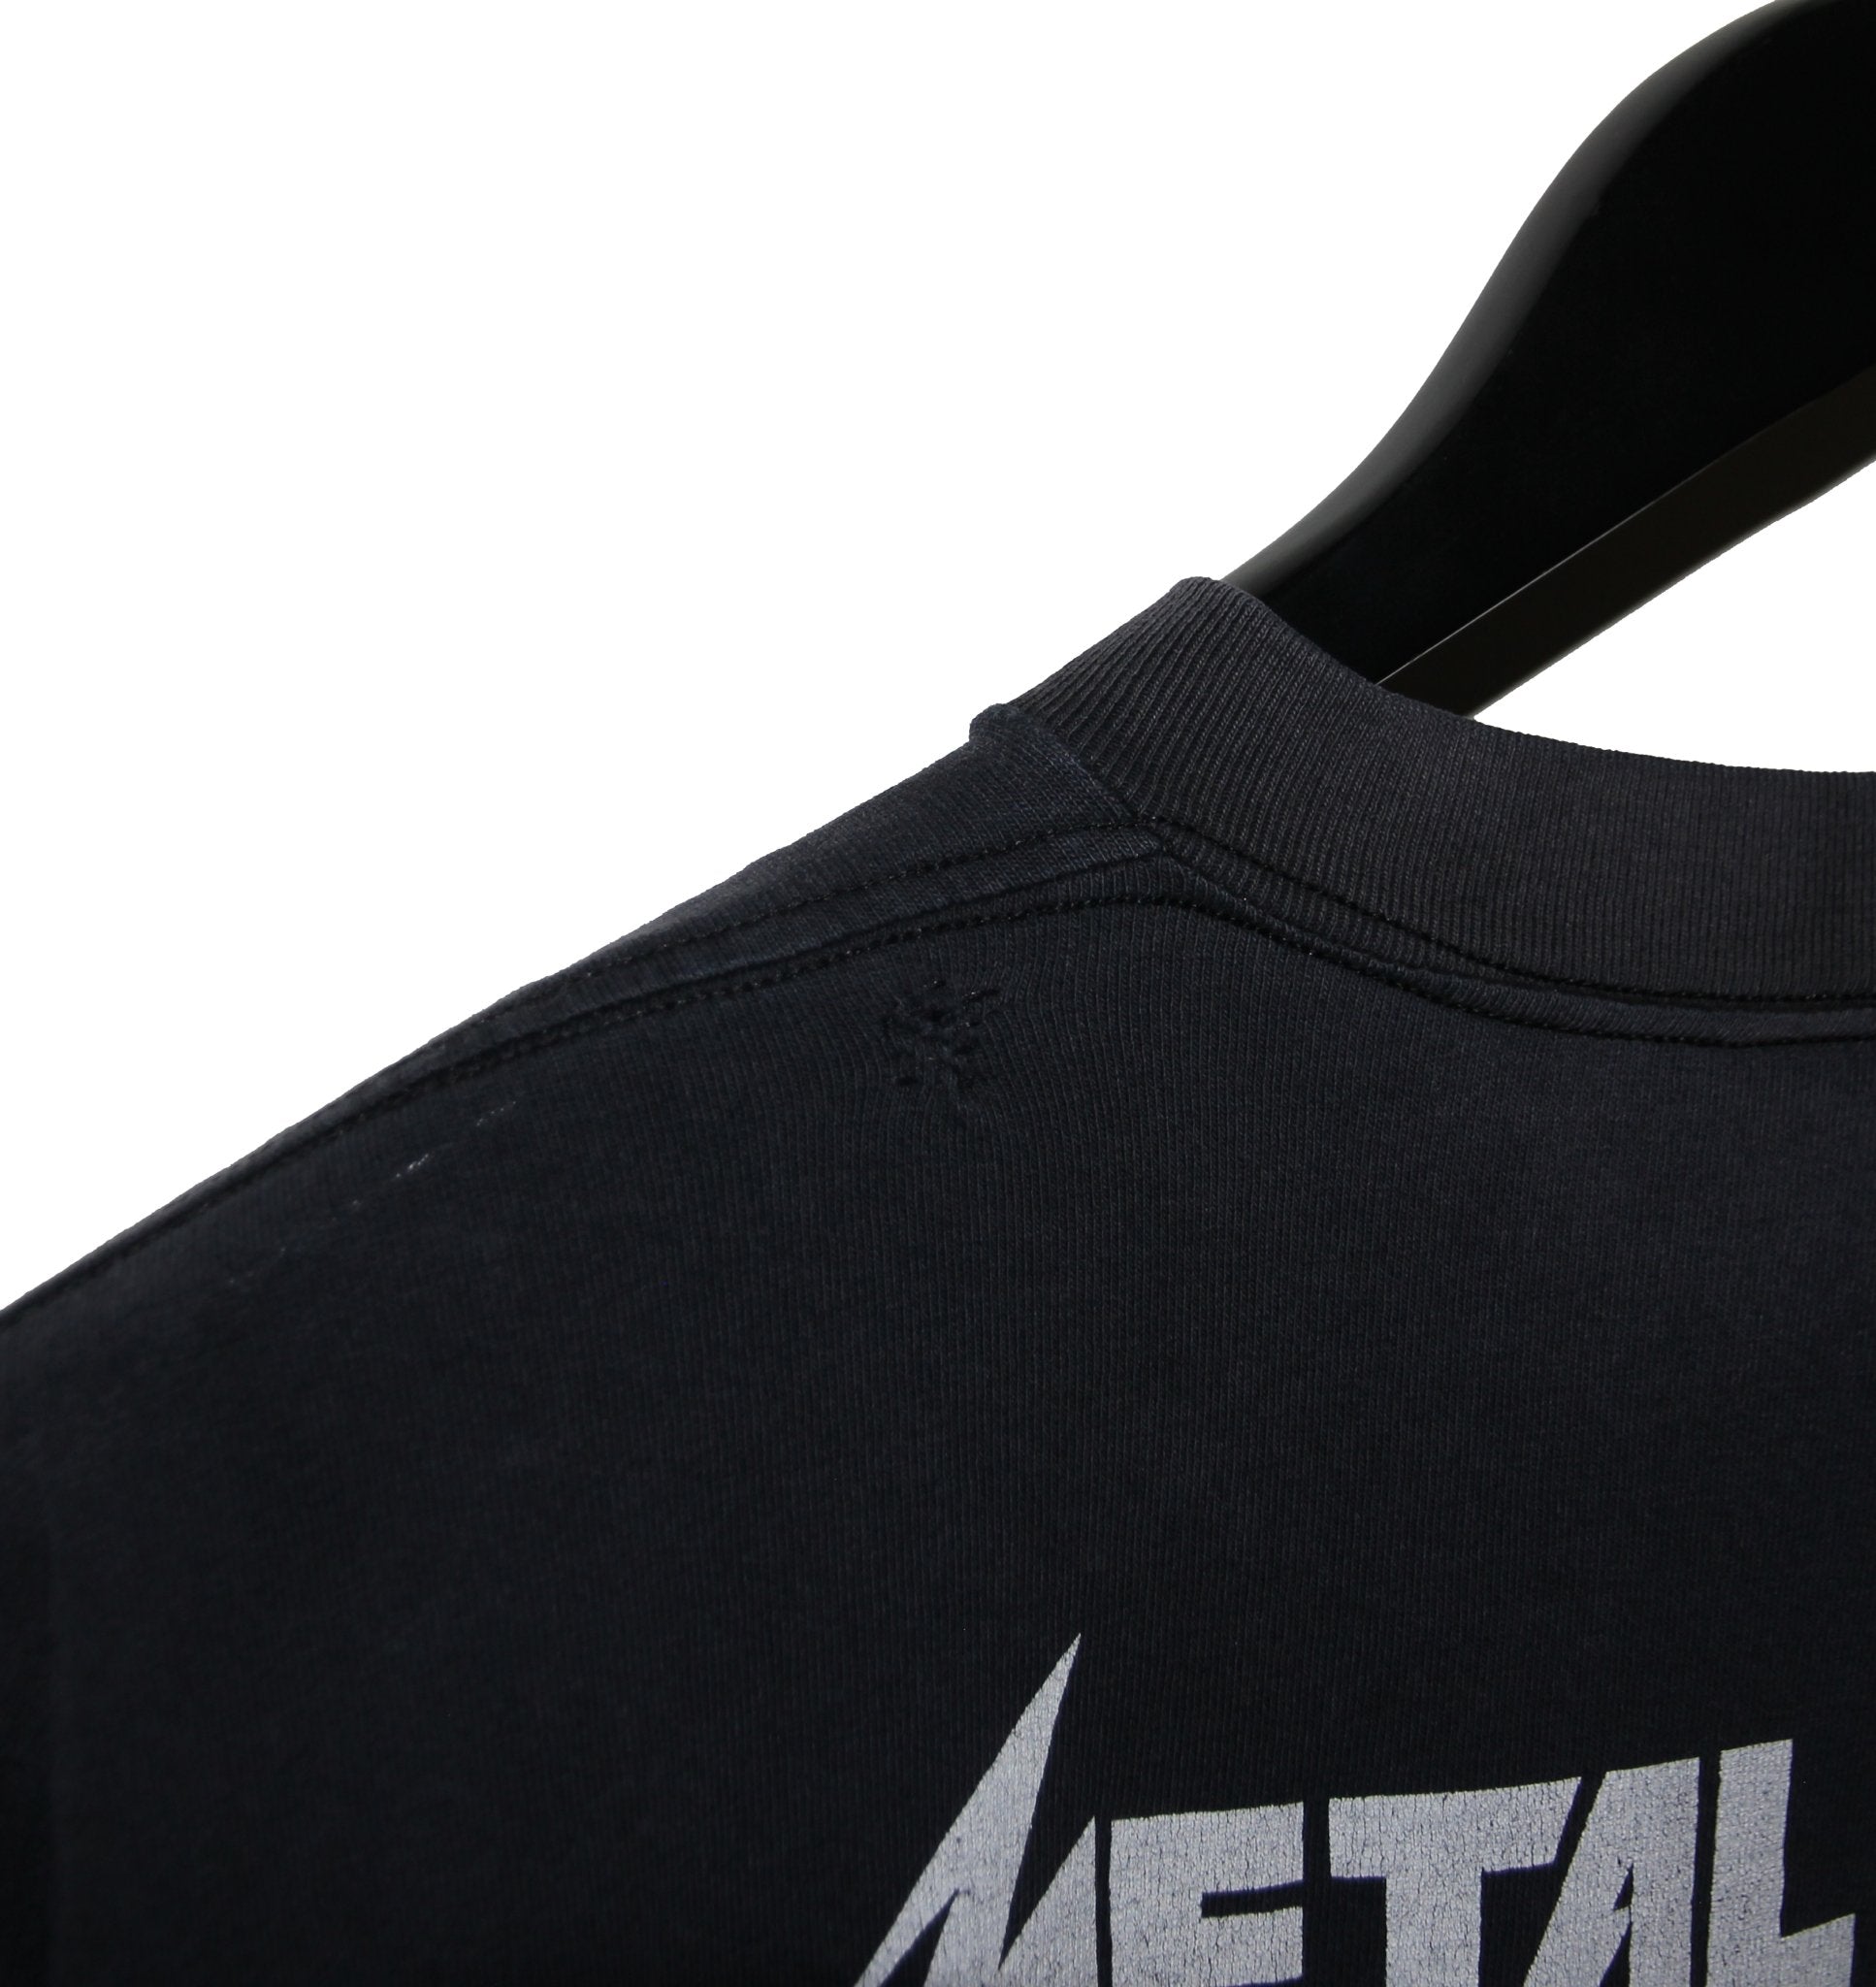 Metallica 90's Alcoholica Shirt - Faded AU